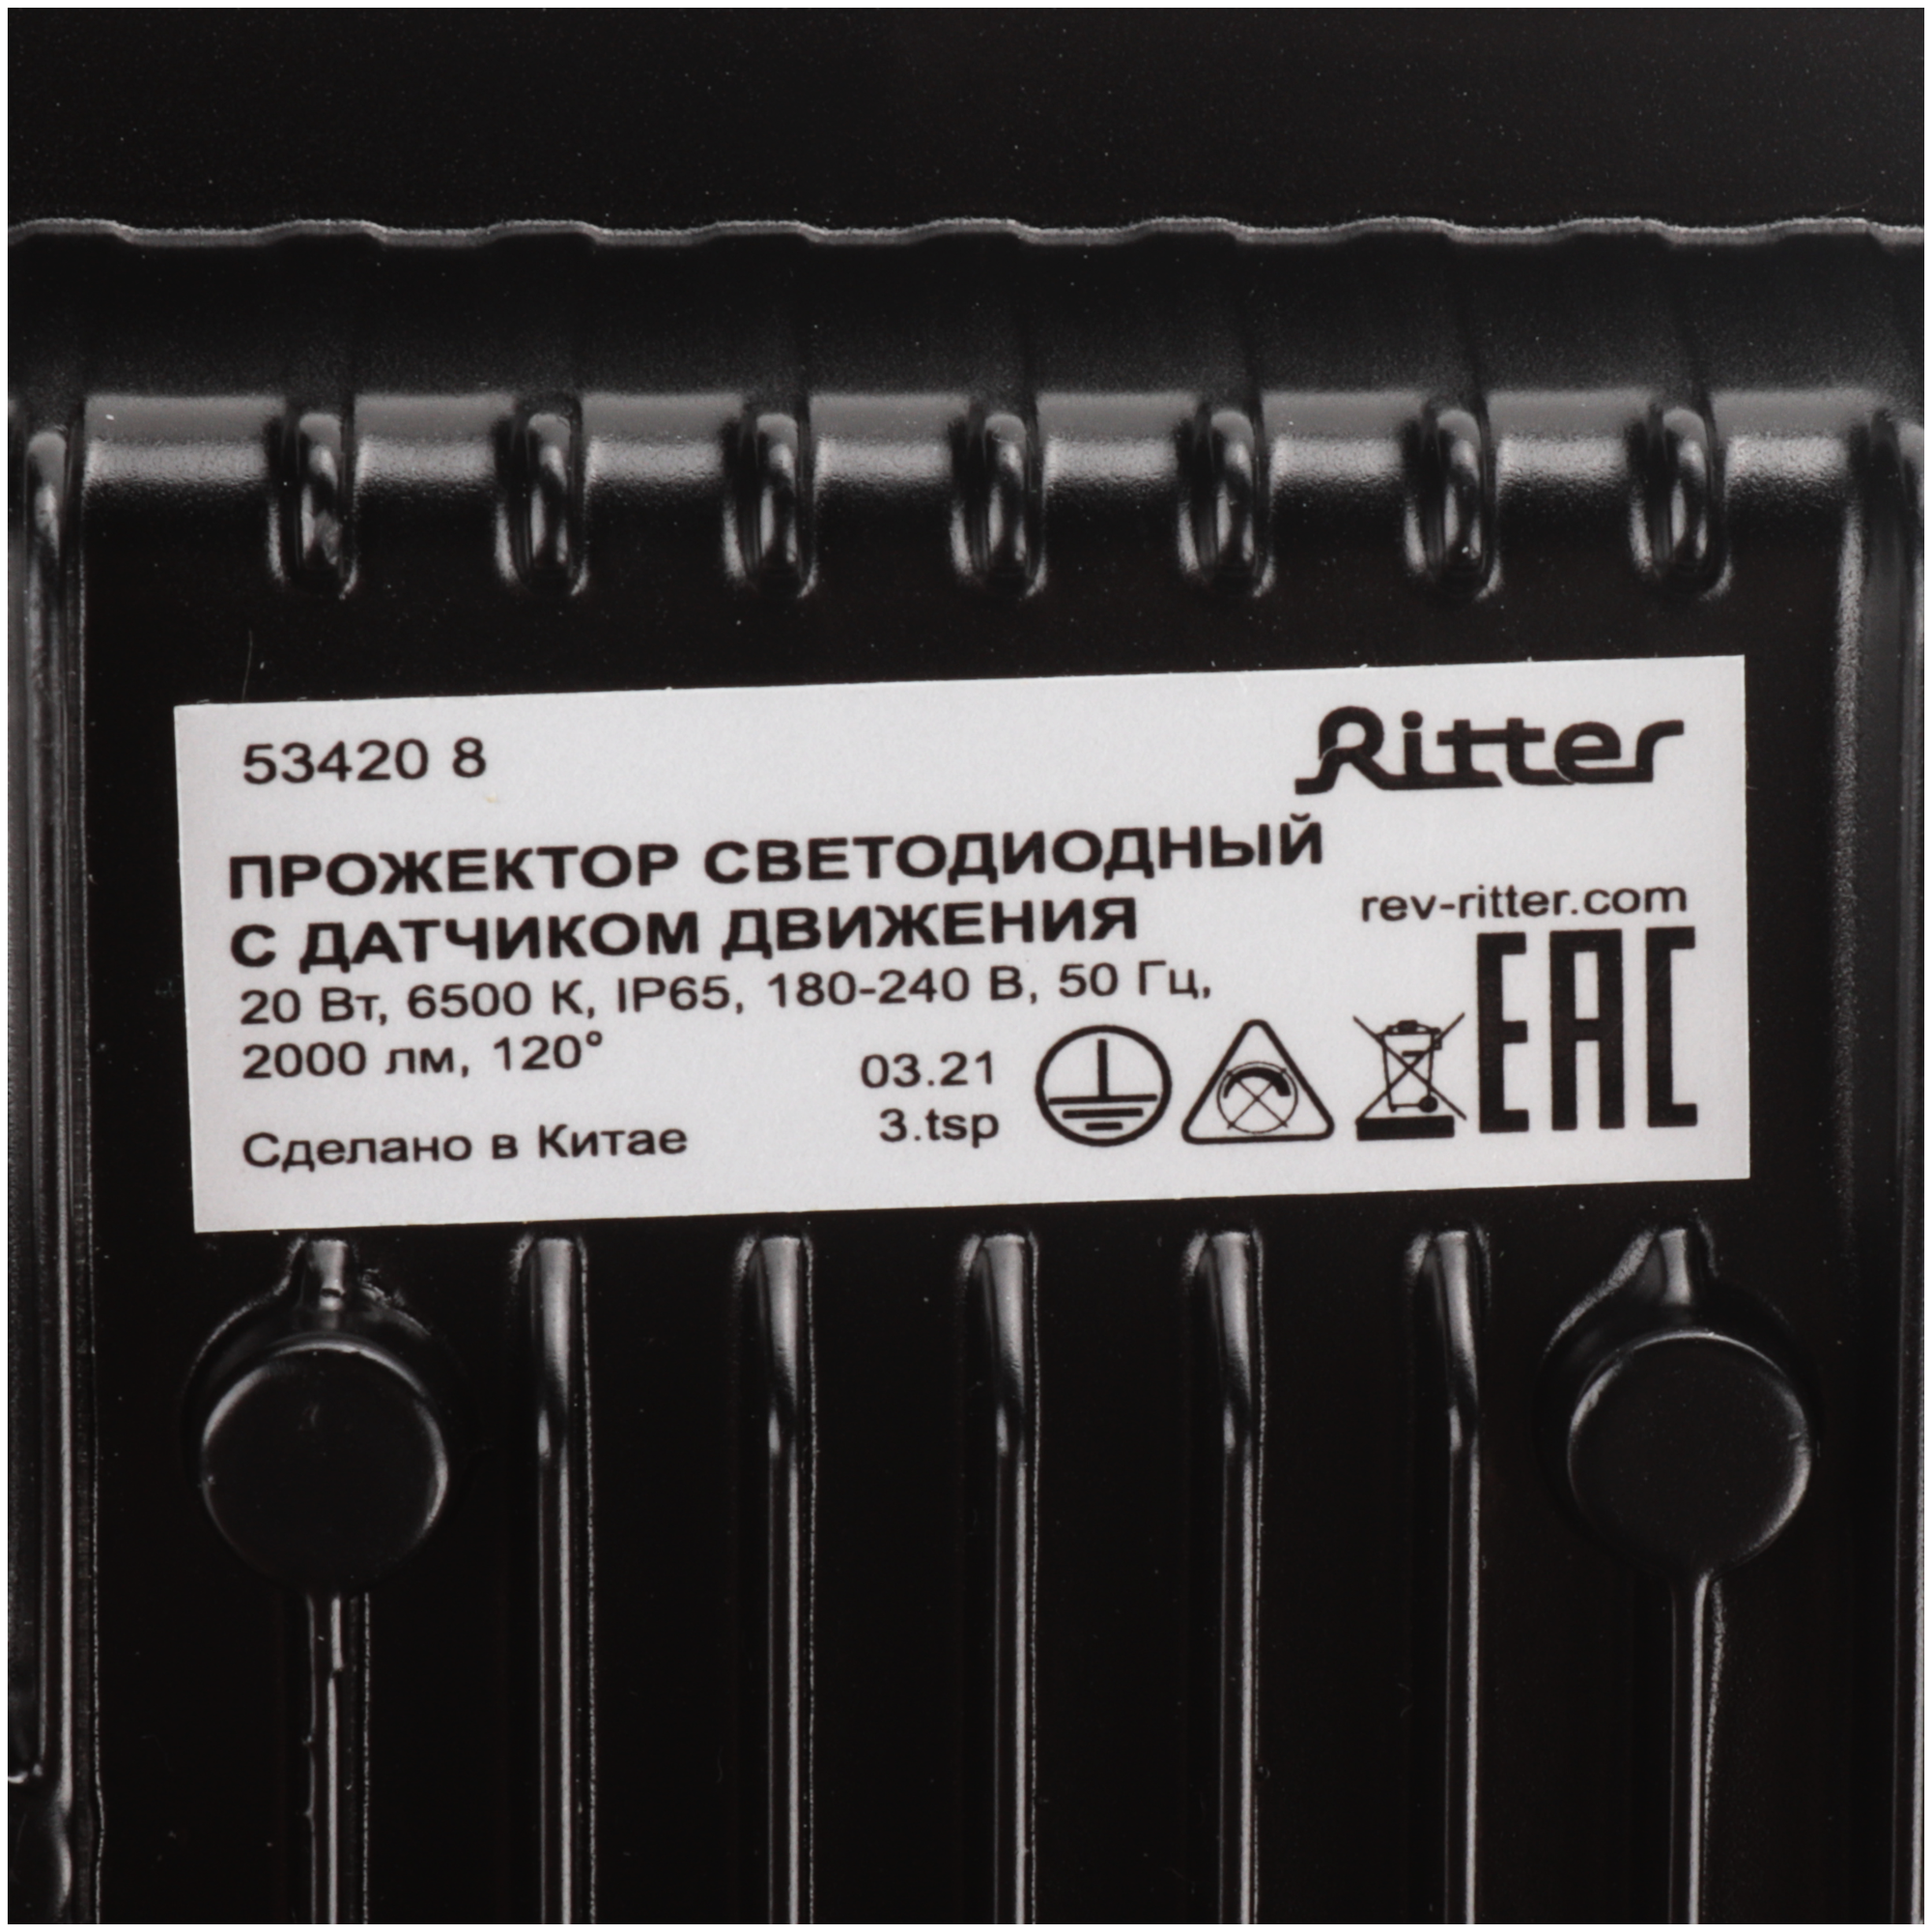 Ritter Прожектор светод, PROFI 230В 20Вт 6500К 2000Лм IP65 с датч движ черн, гарантия 5 лет 53420 8 - фотография № 14